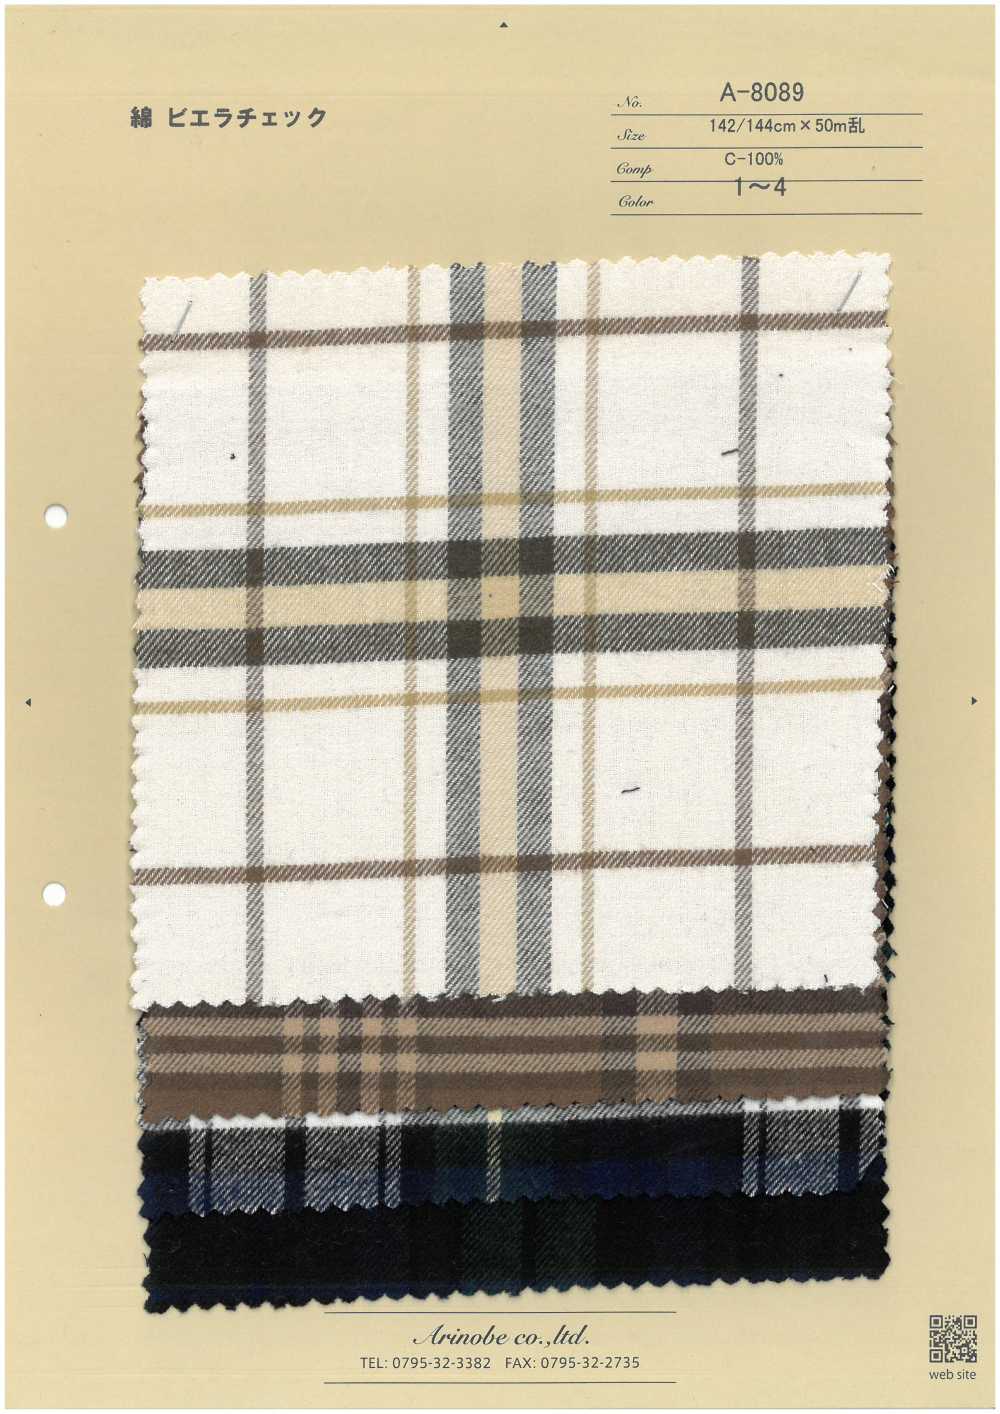 A-8089 Cuadros Viyella Algodón[Fabrica Textil] ARINOBE CO., LTD.